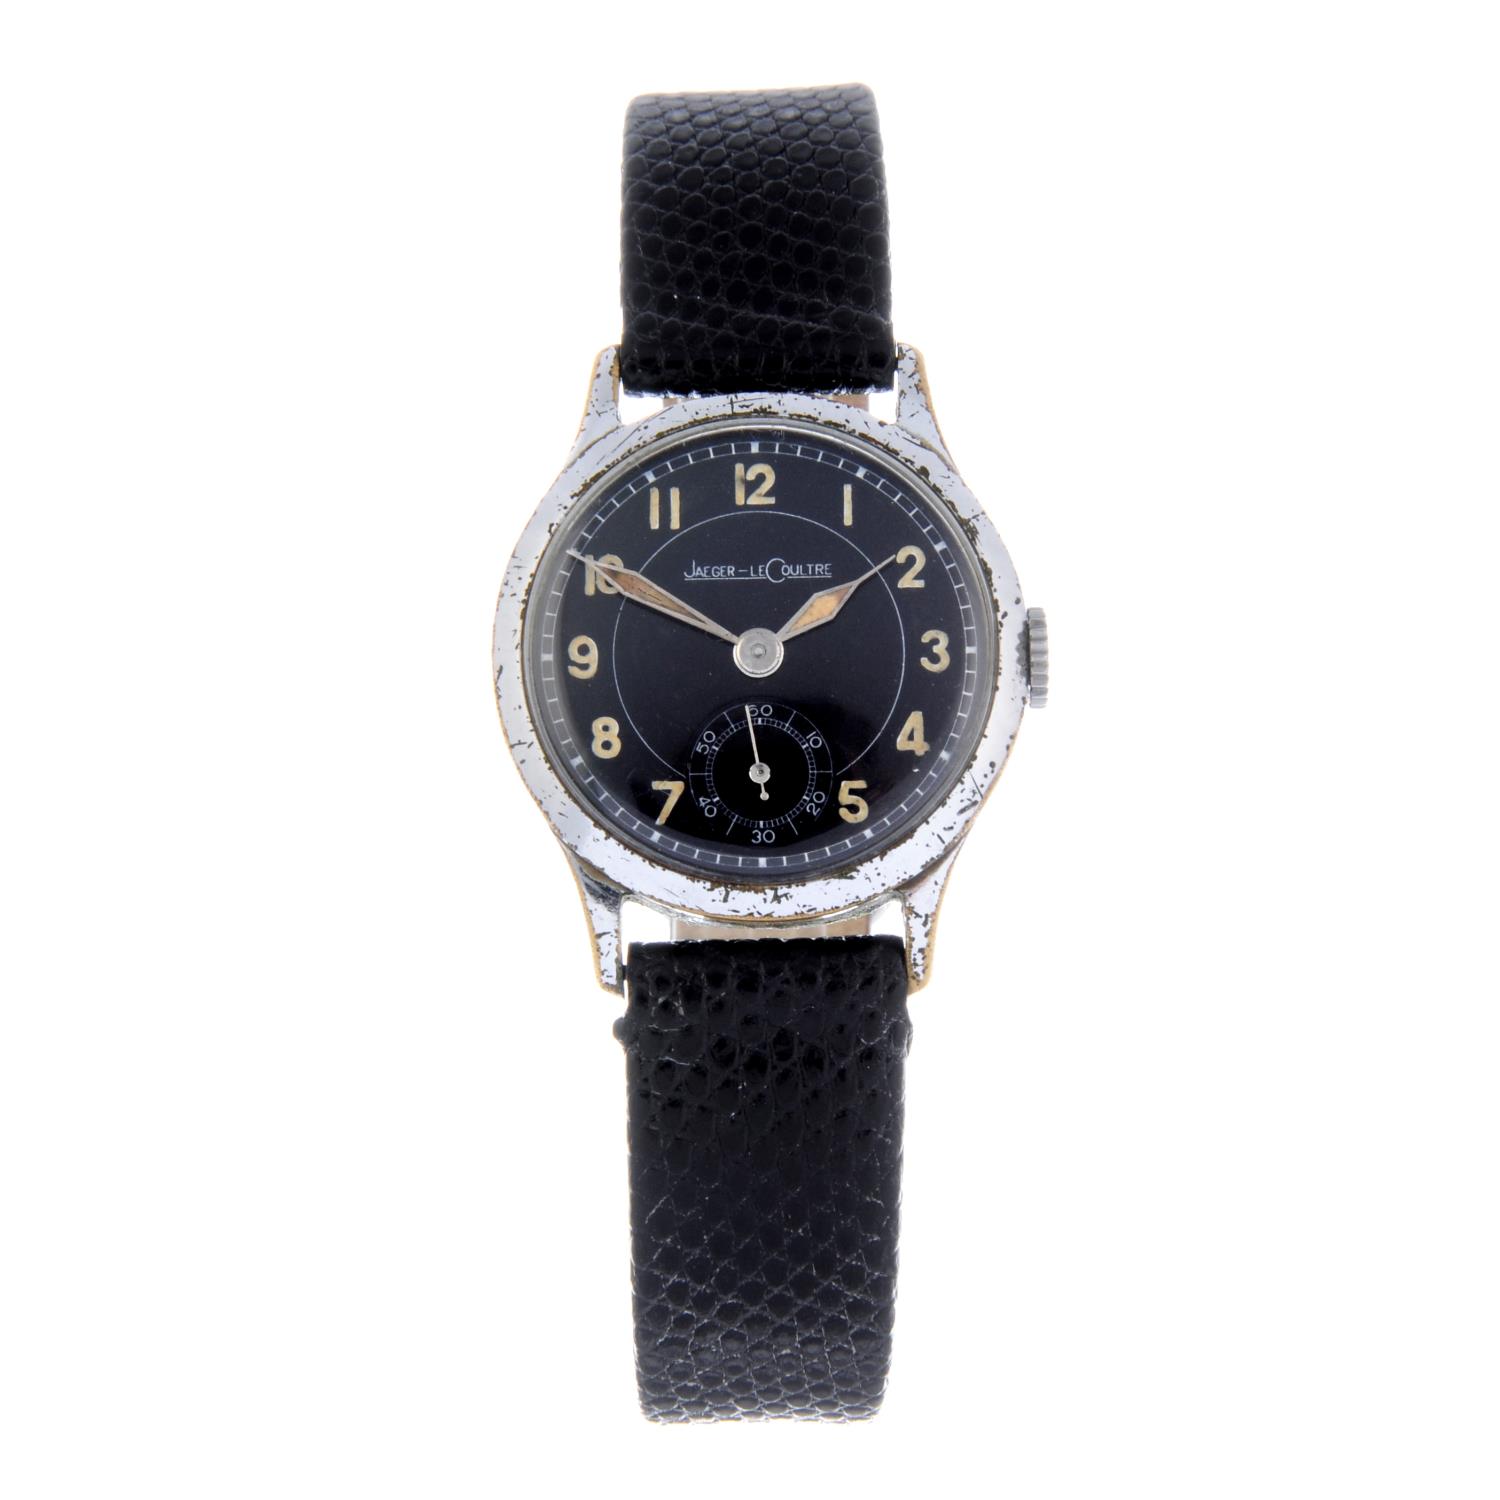 JAEGER-LECOULTRE - a gentleman's wrist watch.